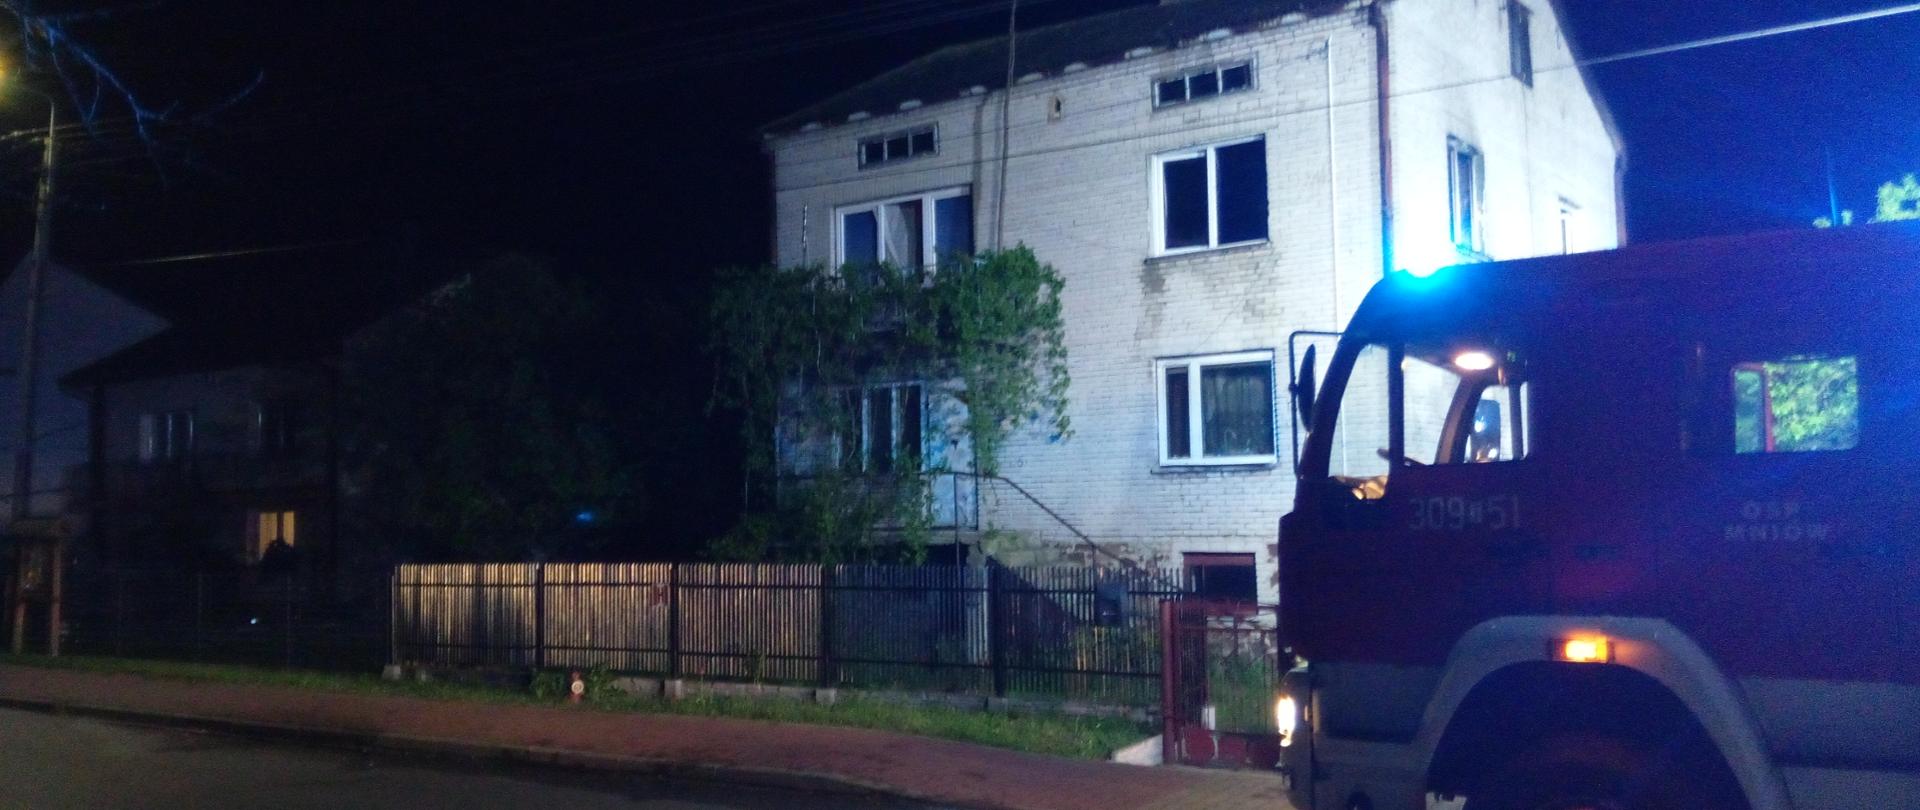 Fotografia przedstawia budynek mieszkalny, w którym wybuchł pożar. Przed budynkiem stoi zaparkowany samochód pożarniczy.